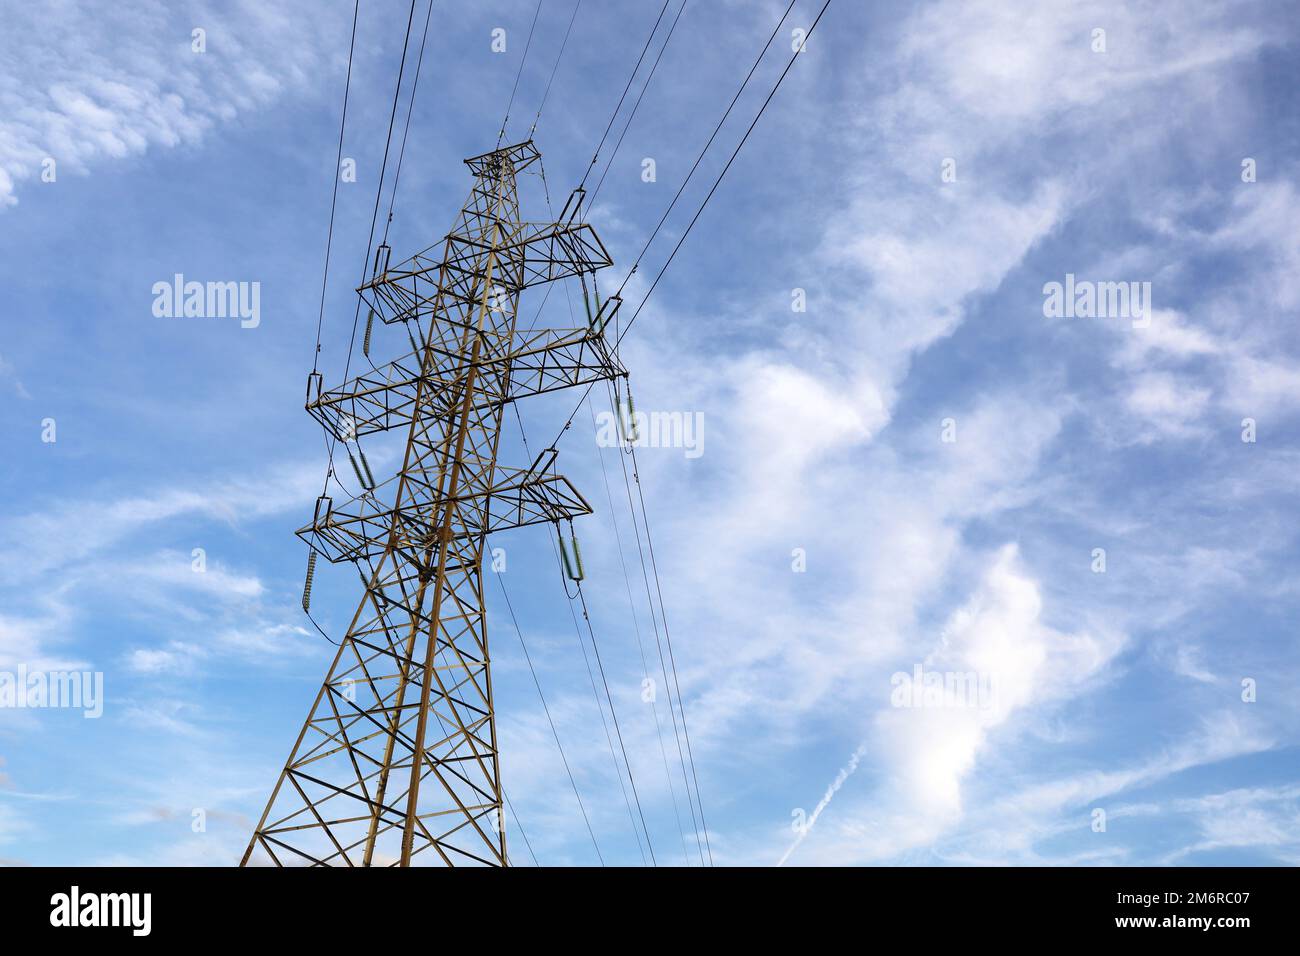 Hochspannungsturm mit elektrischen Drähten am blauen Himmel mit weißen Wolken. Stromübertragungsleitungen, Stromversorgungskonzept Stockfoto